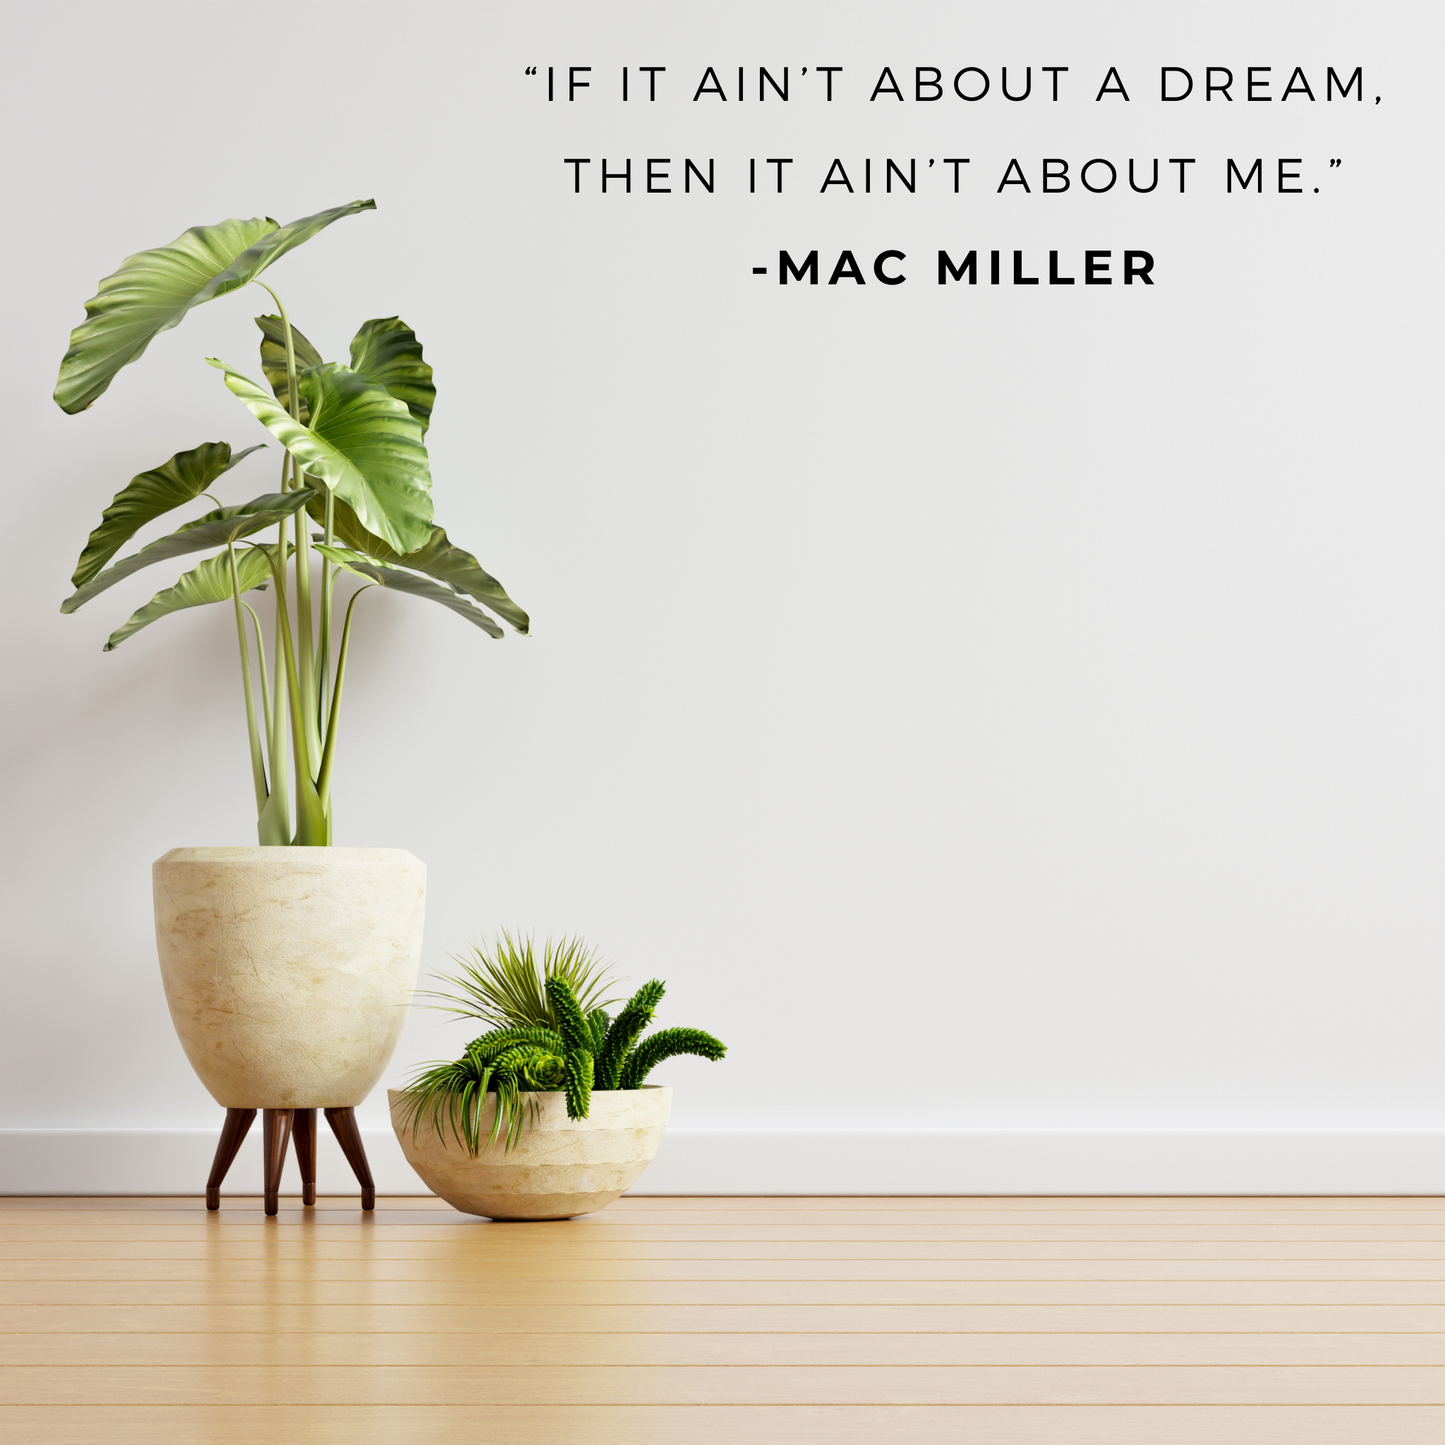 Mac Miller Rap Hip Hop Music Fan Lyric Quote Vinyl Wall Art Decal Sticker For Rentals Office Home